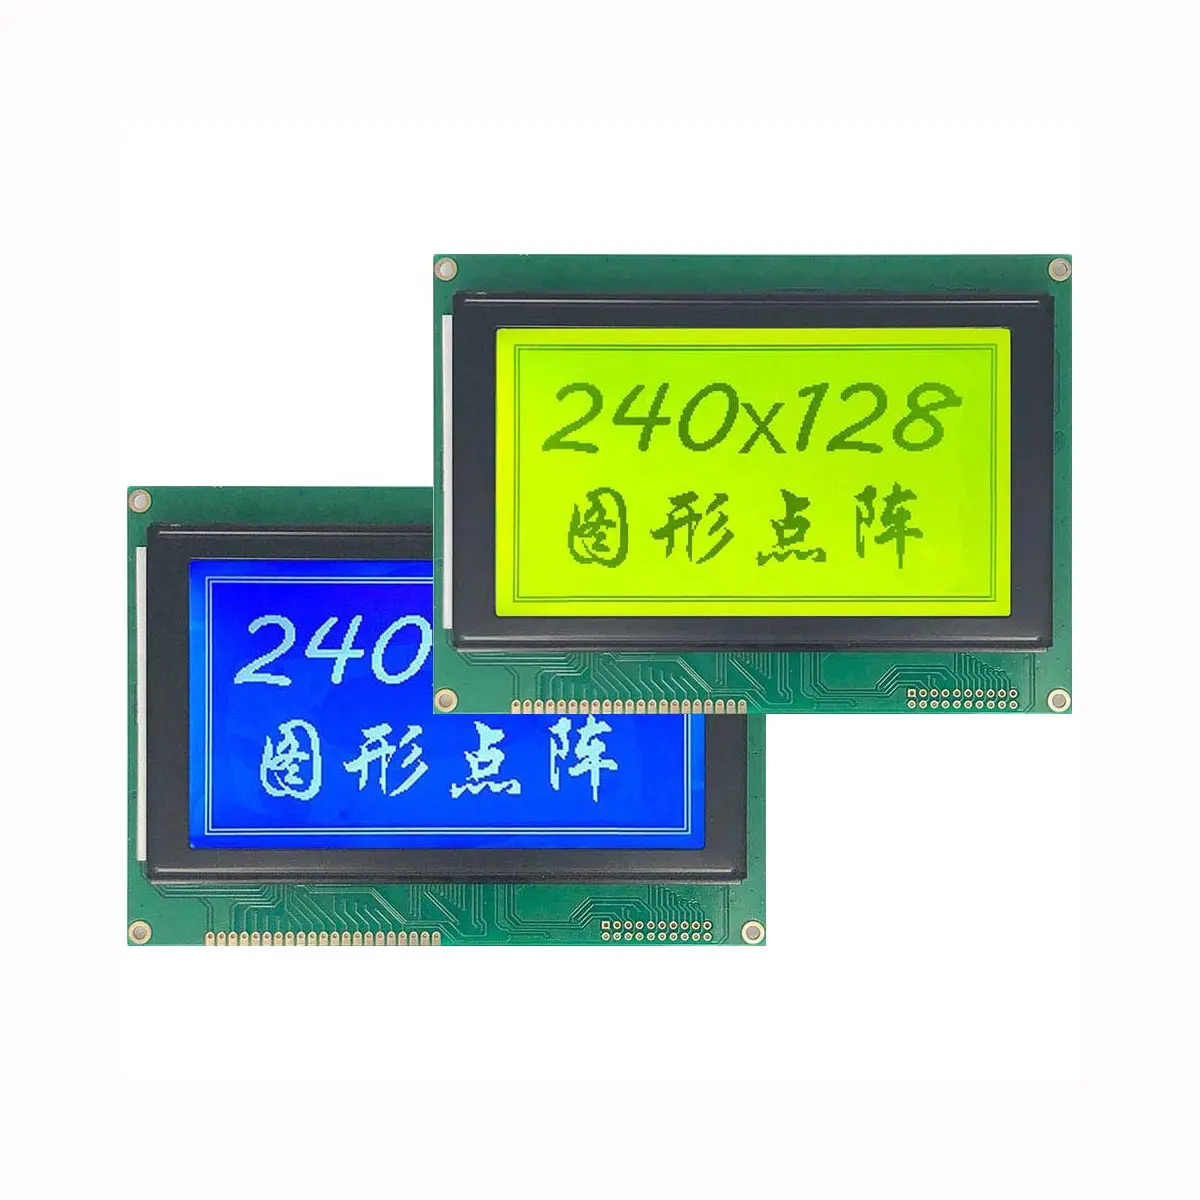 RTS-4.7 "144 x109mm 240128 240*128 RA6963 UCi6963 STN giallo verde matrice grafica modulo LCD Display pannello dello schermo retroilluminazione a LED